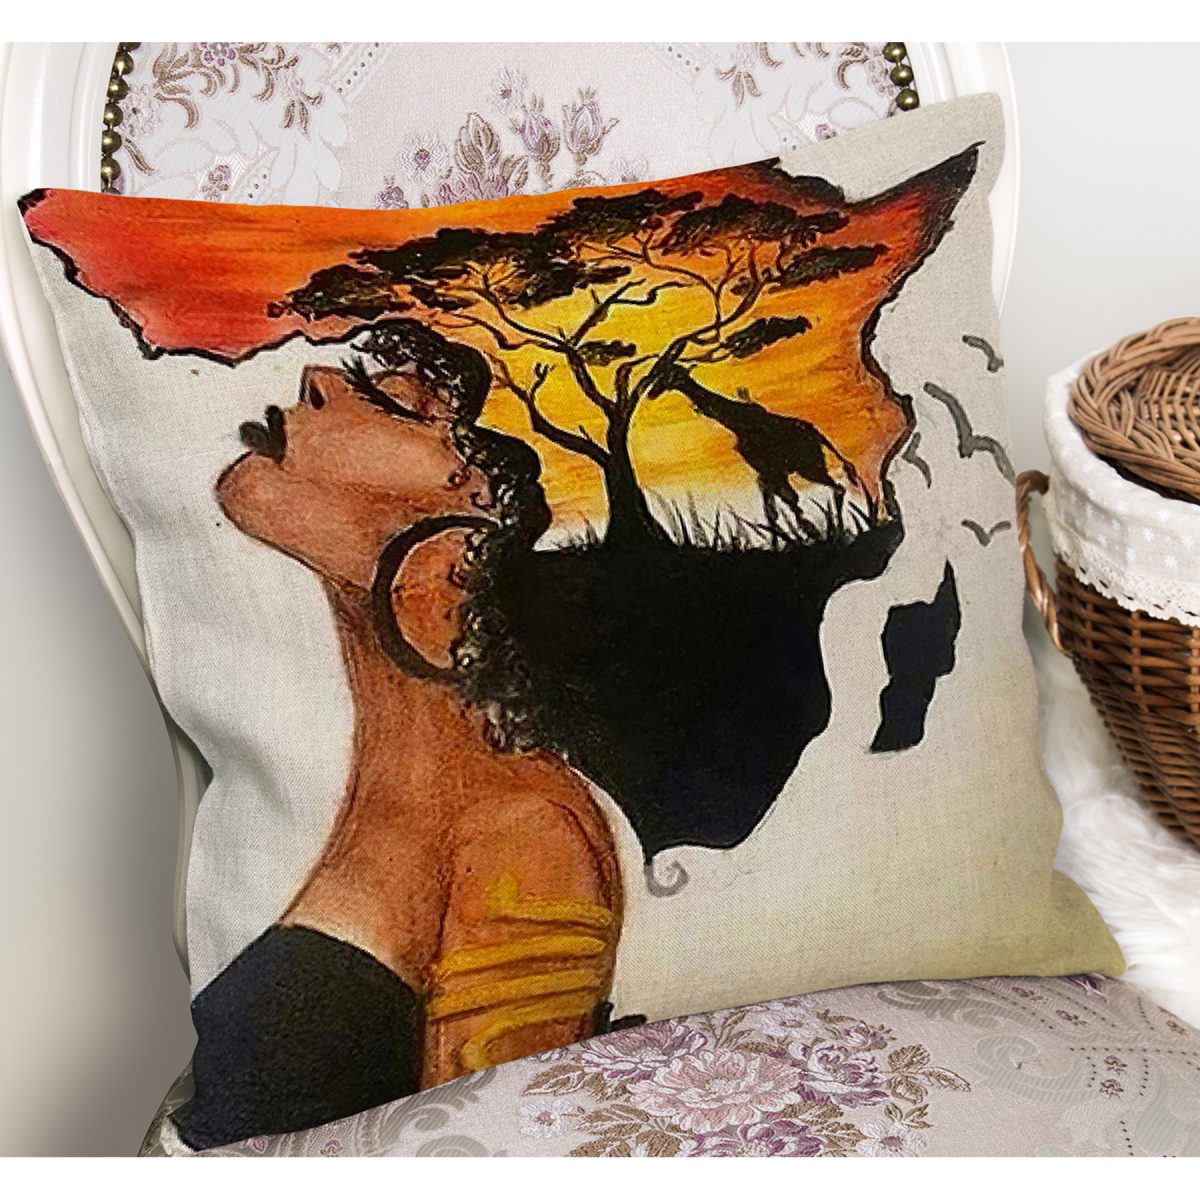 RealHomes Ekru - Turuncu Zeminde Afrika Kadın Motifli Abstract Desenli Dijital Baskılı Yastık Kırlent Kılıfı Realhomes